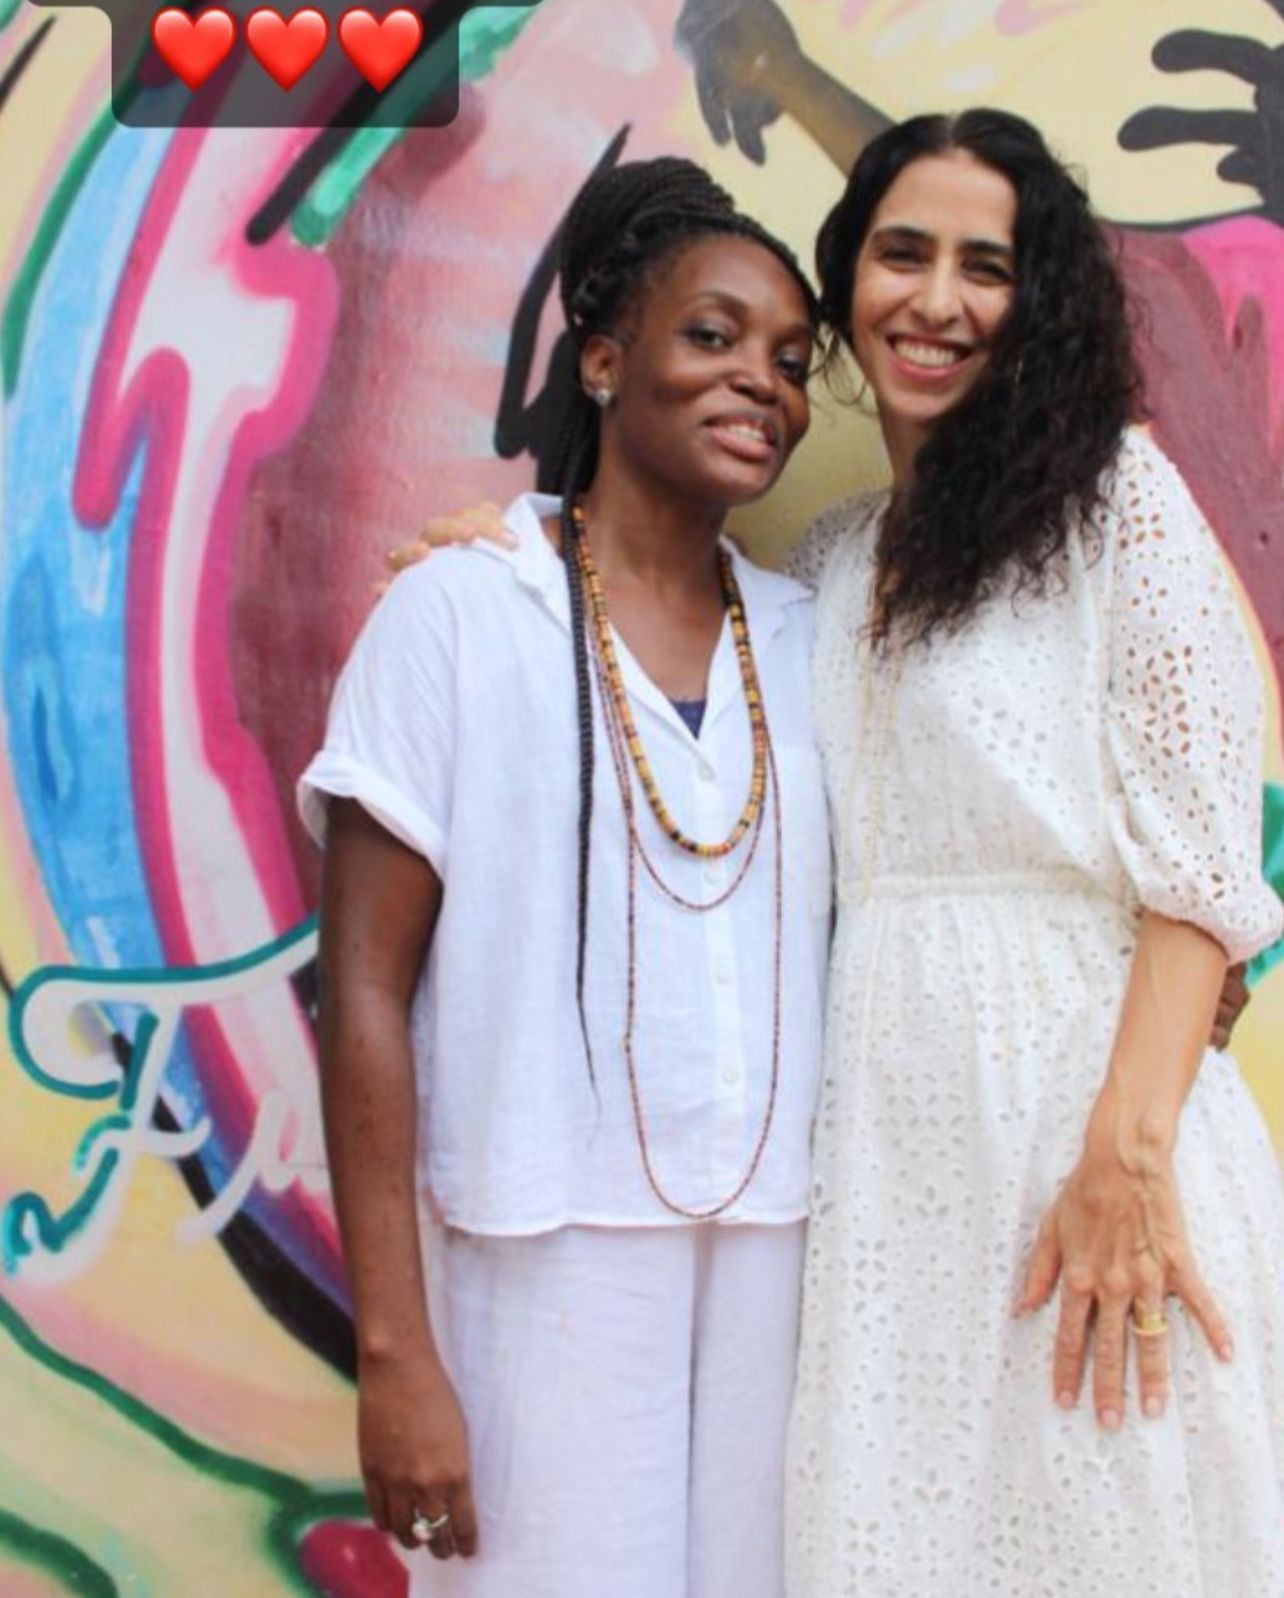 Marisa Monte visita Instituto Oyá, em Salvador, e elogia trabalho social: “Fiquei encantada”